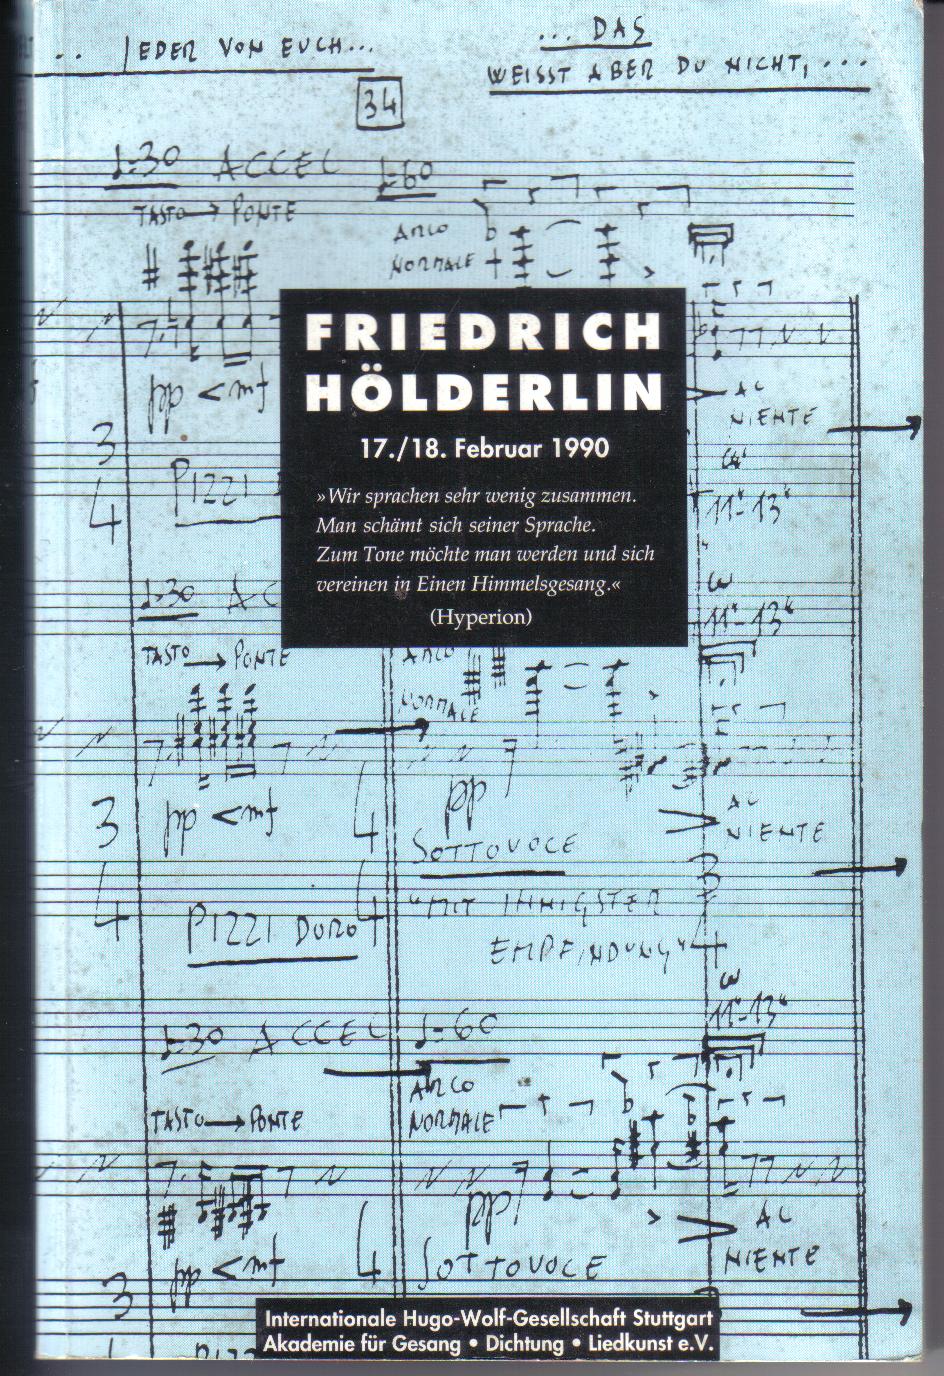 Friedrich Hoelderlin 17/18 Februar 1990 (Hyperion)